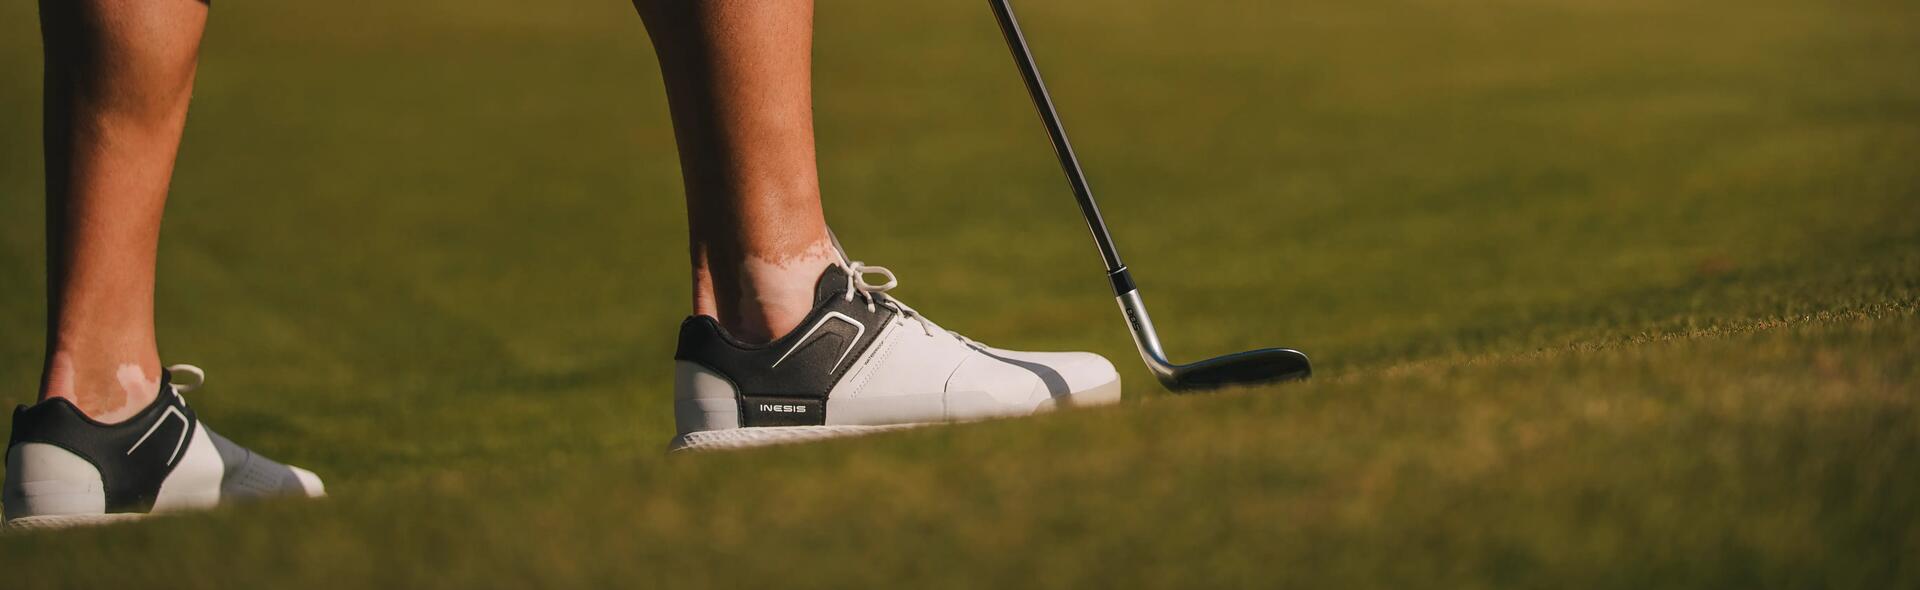 Come scegliere le scarpe da golf?